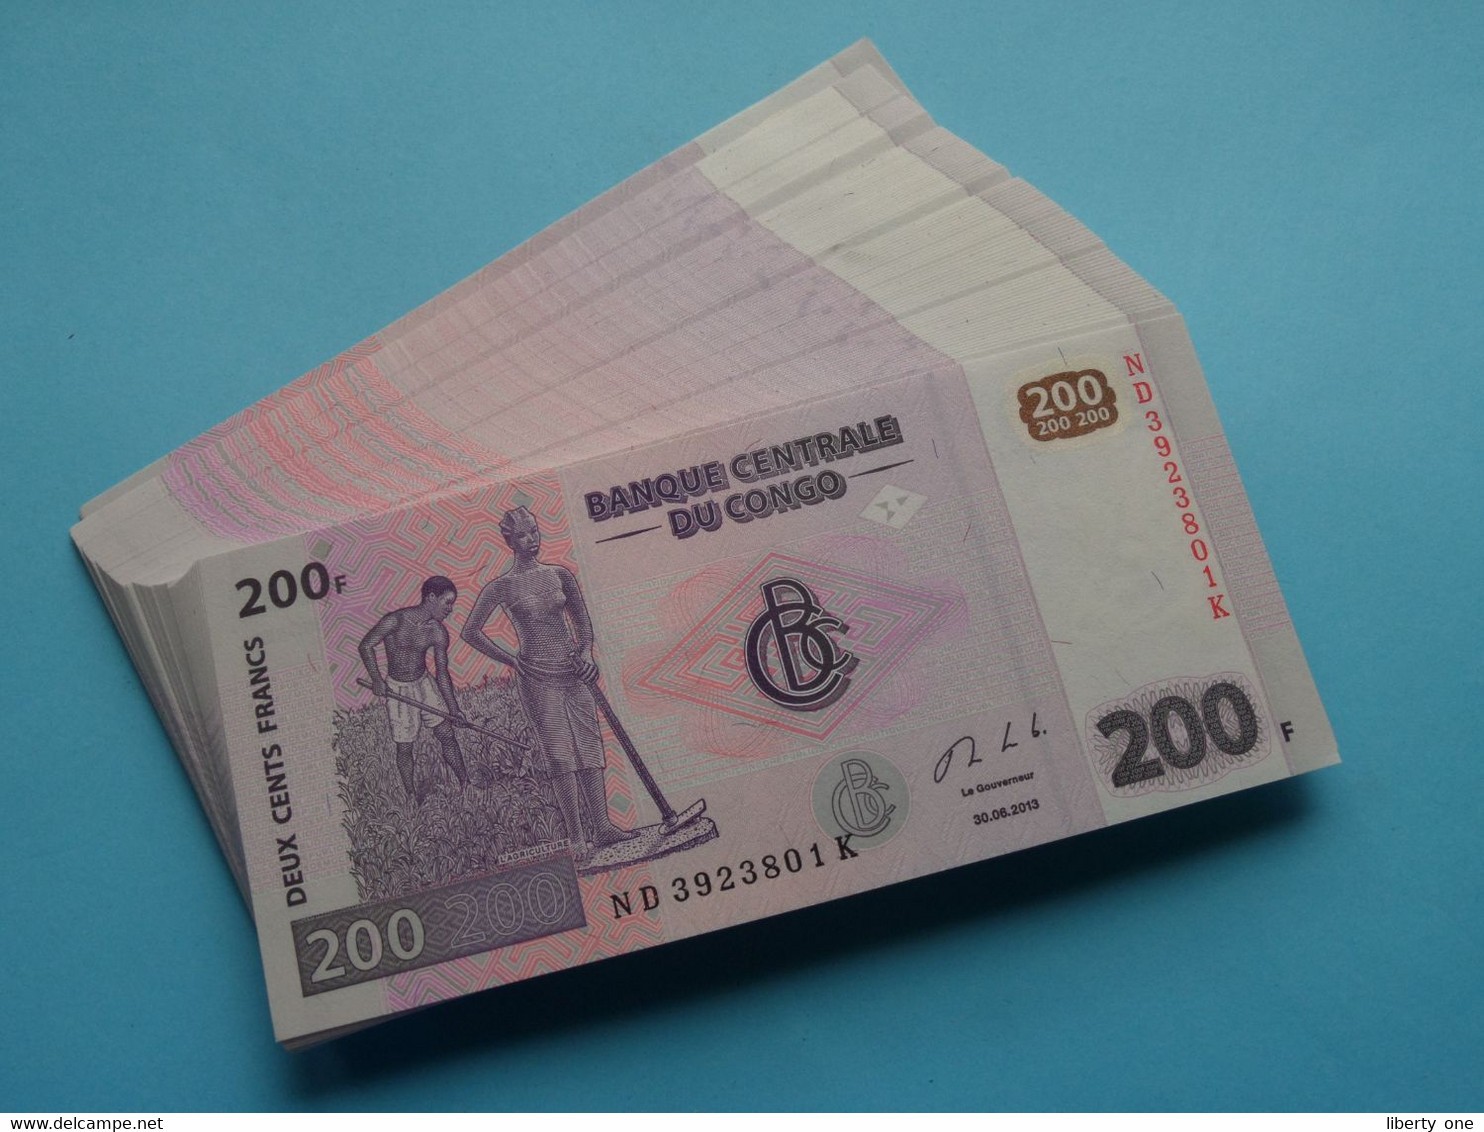 200 ( Deux Cents ) Francs ( 2013 ) Banque Centrale Du CONGO ( For Grade, Please See Photo ) UNC ! - Republiek Congo (Congo-Brazzaville)